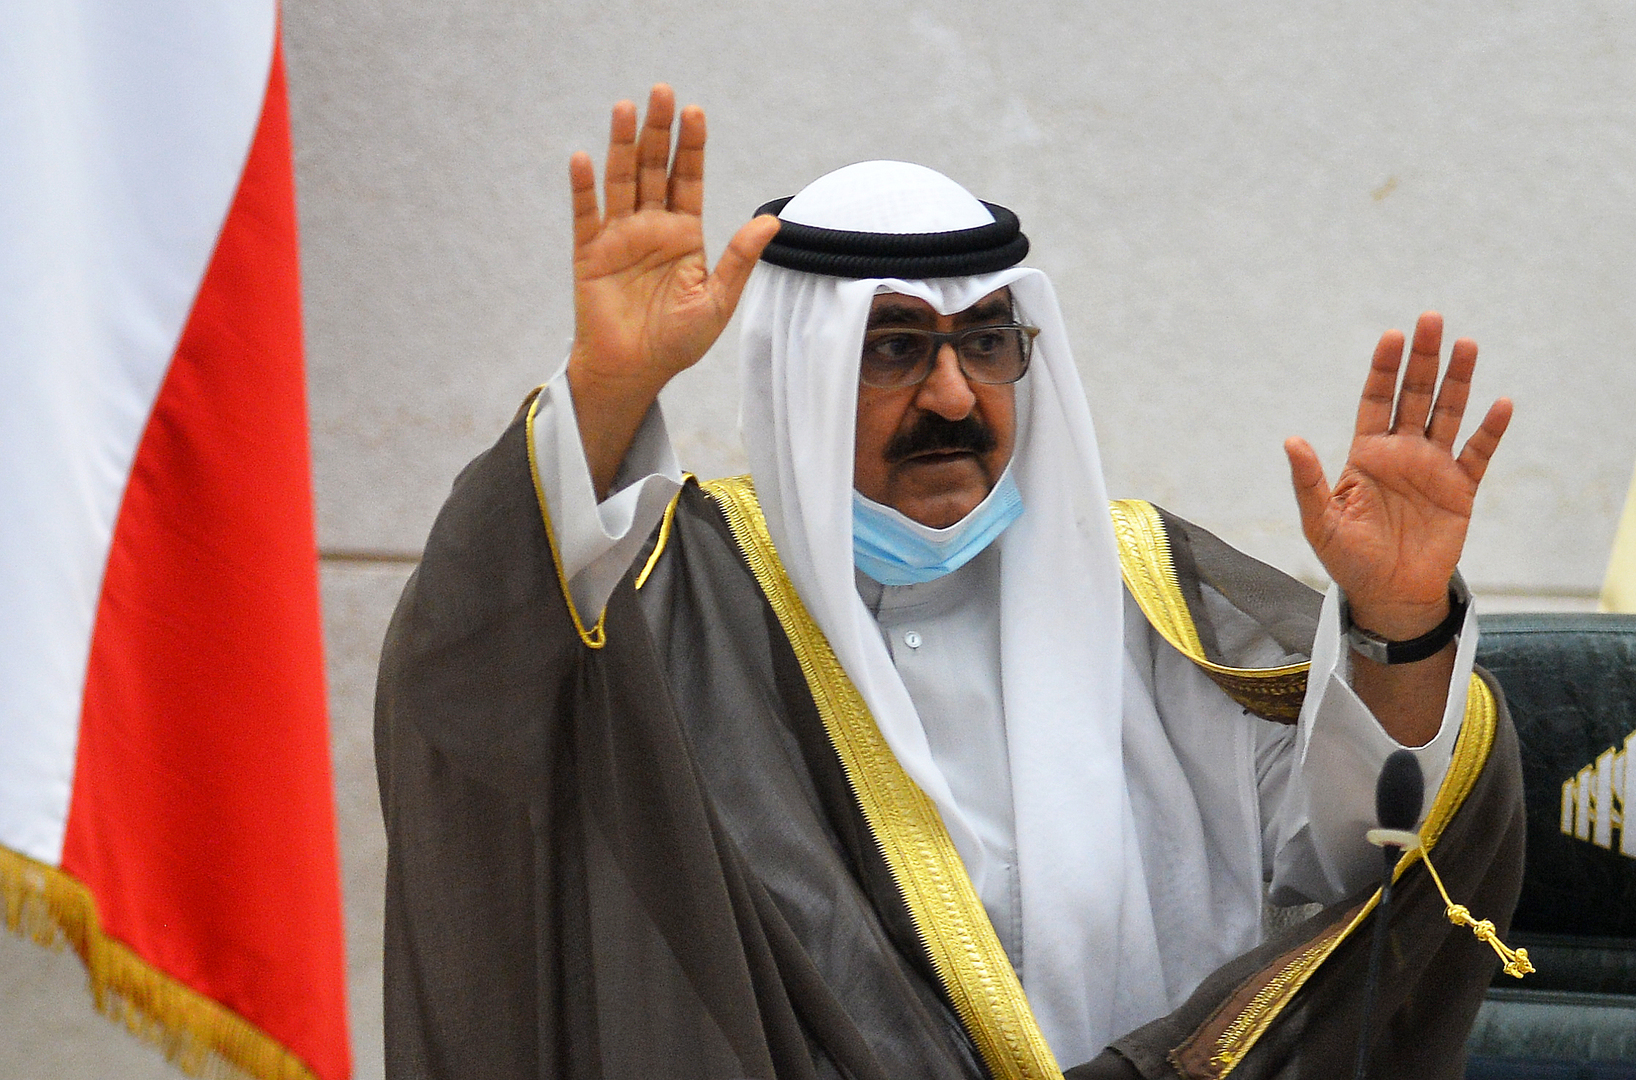 الديوان الملكي الكويتي يصدر بيانا بشأن صحة ولي العهد